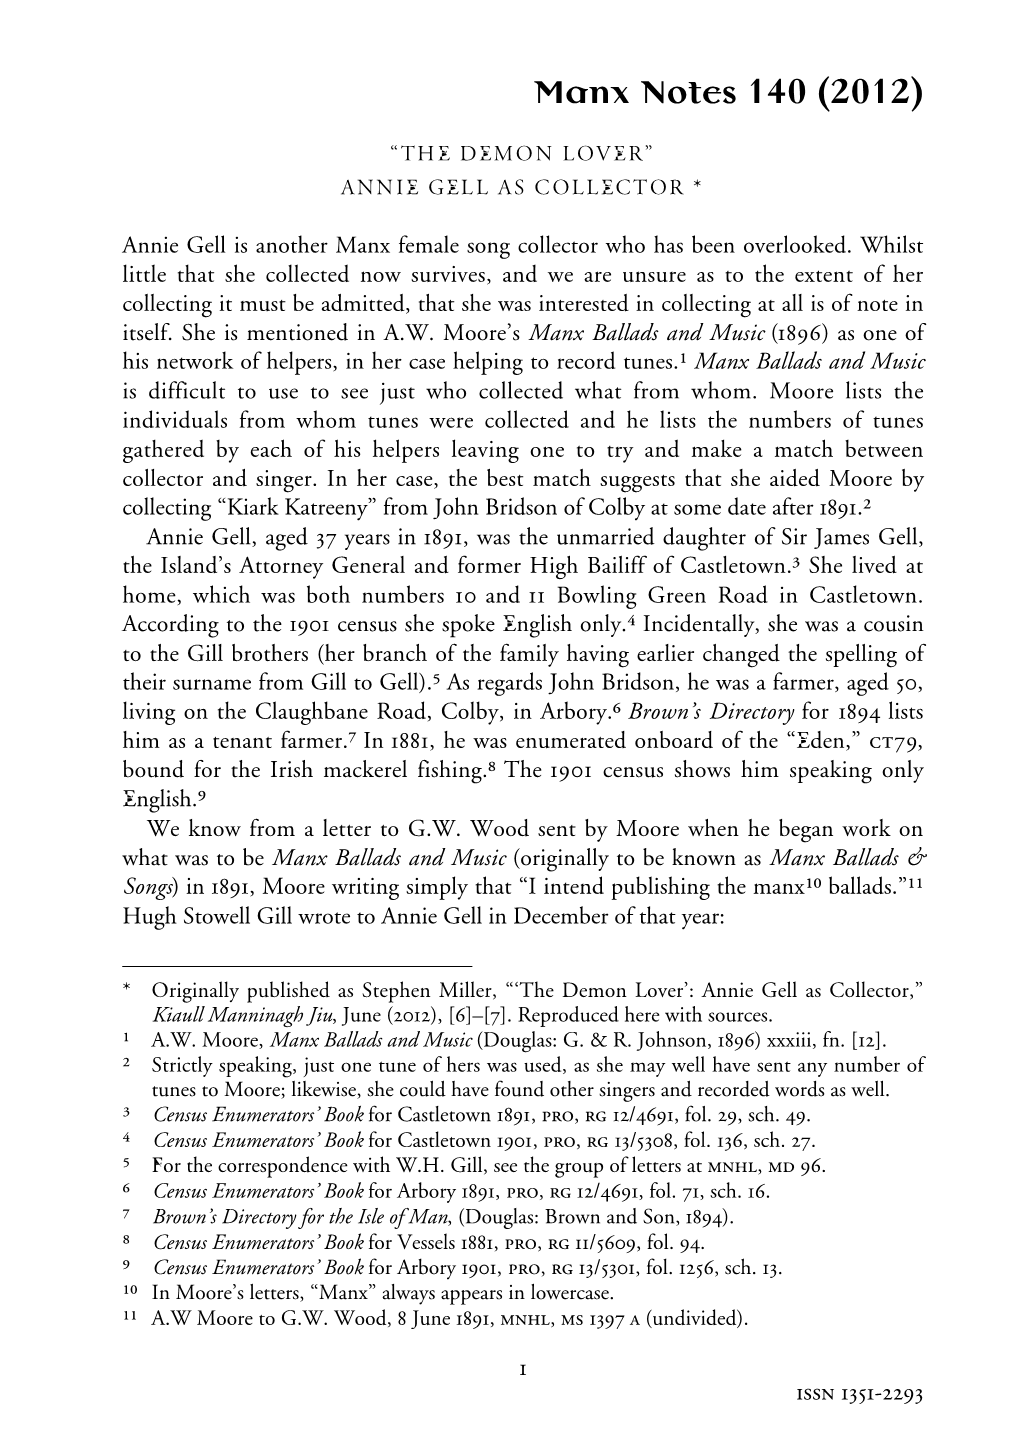 The Demon Lover’: Annie Gell As Collector,” Kiaull Manninagh Jiu, June (2012), [6]–[7]